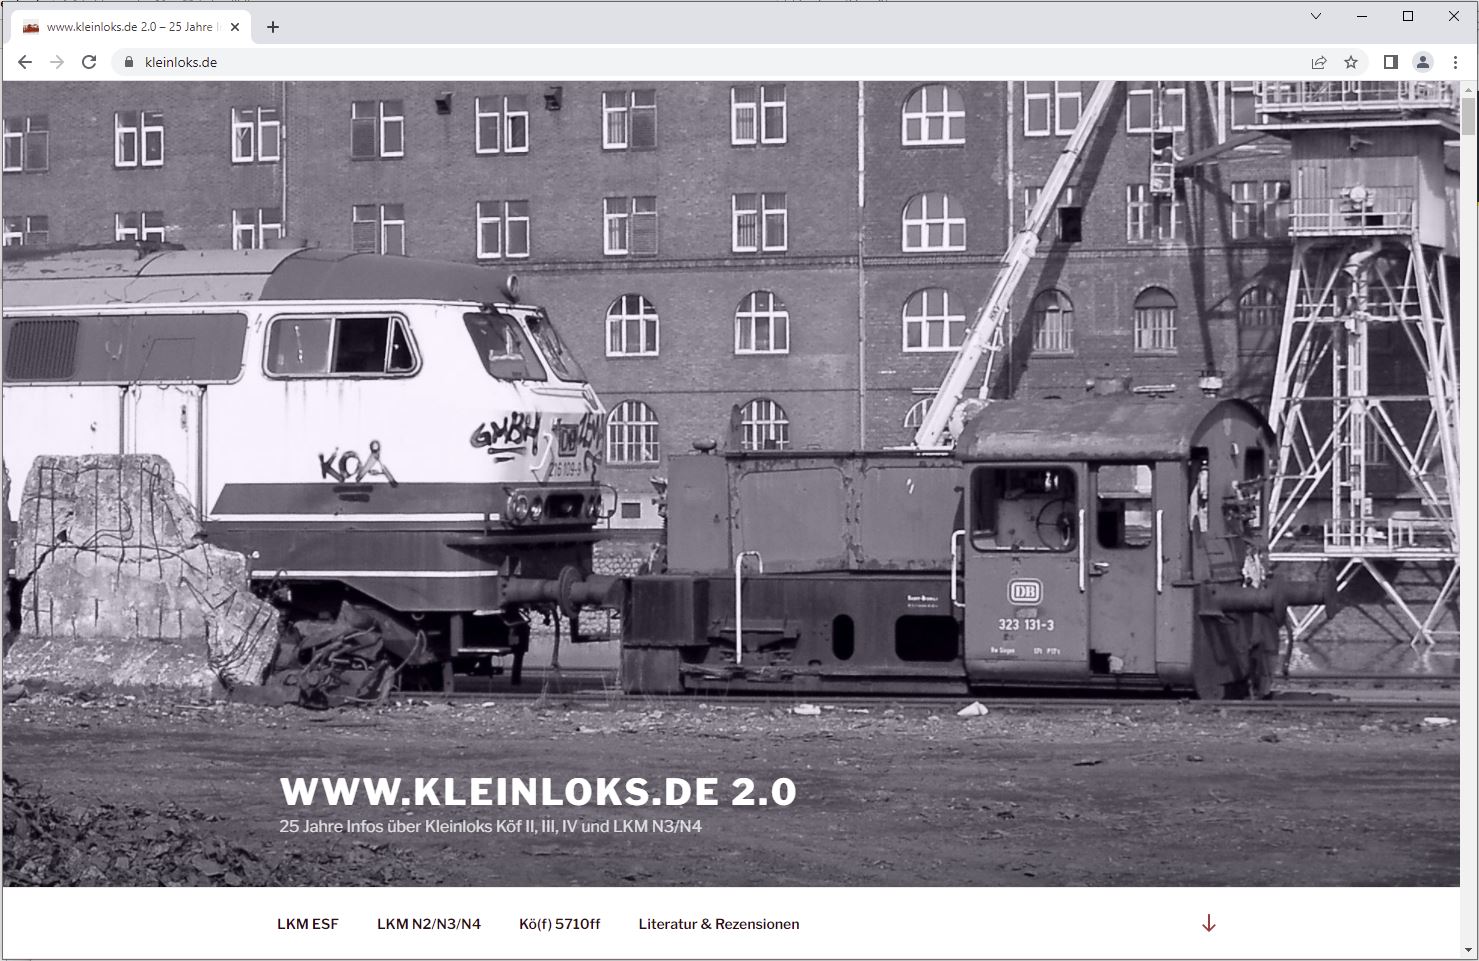 www.kleinloks.de